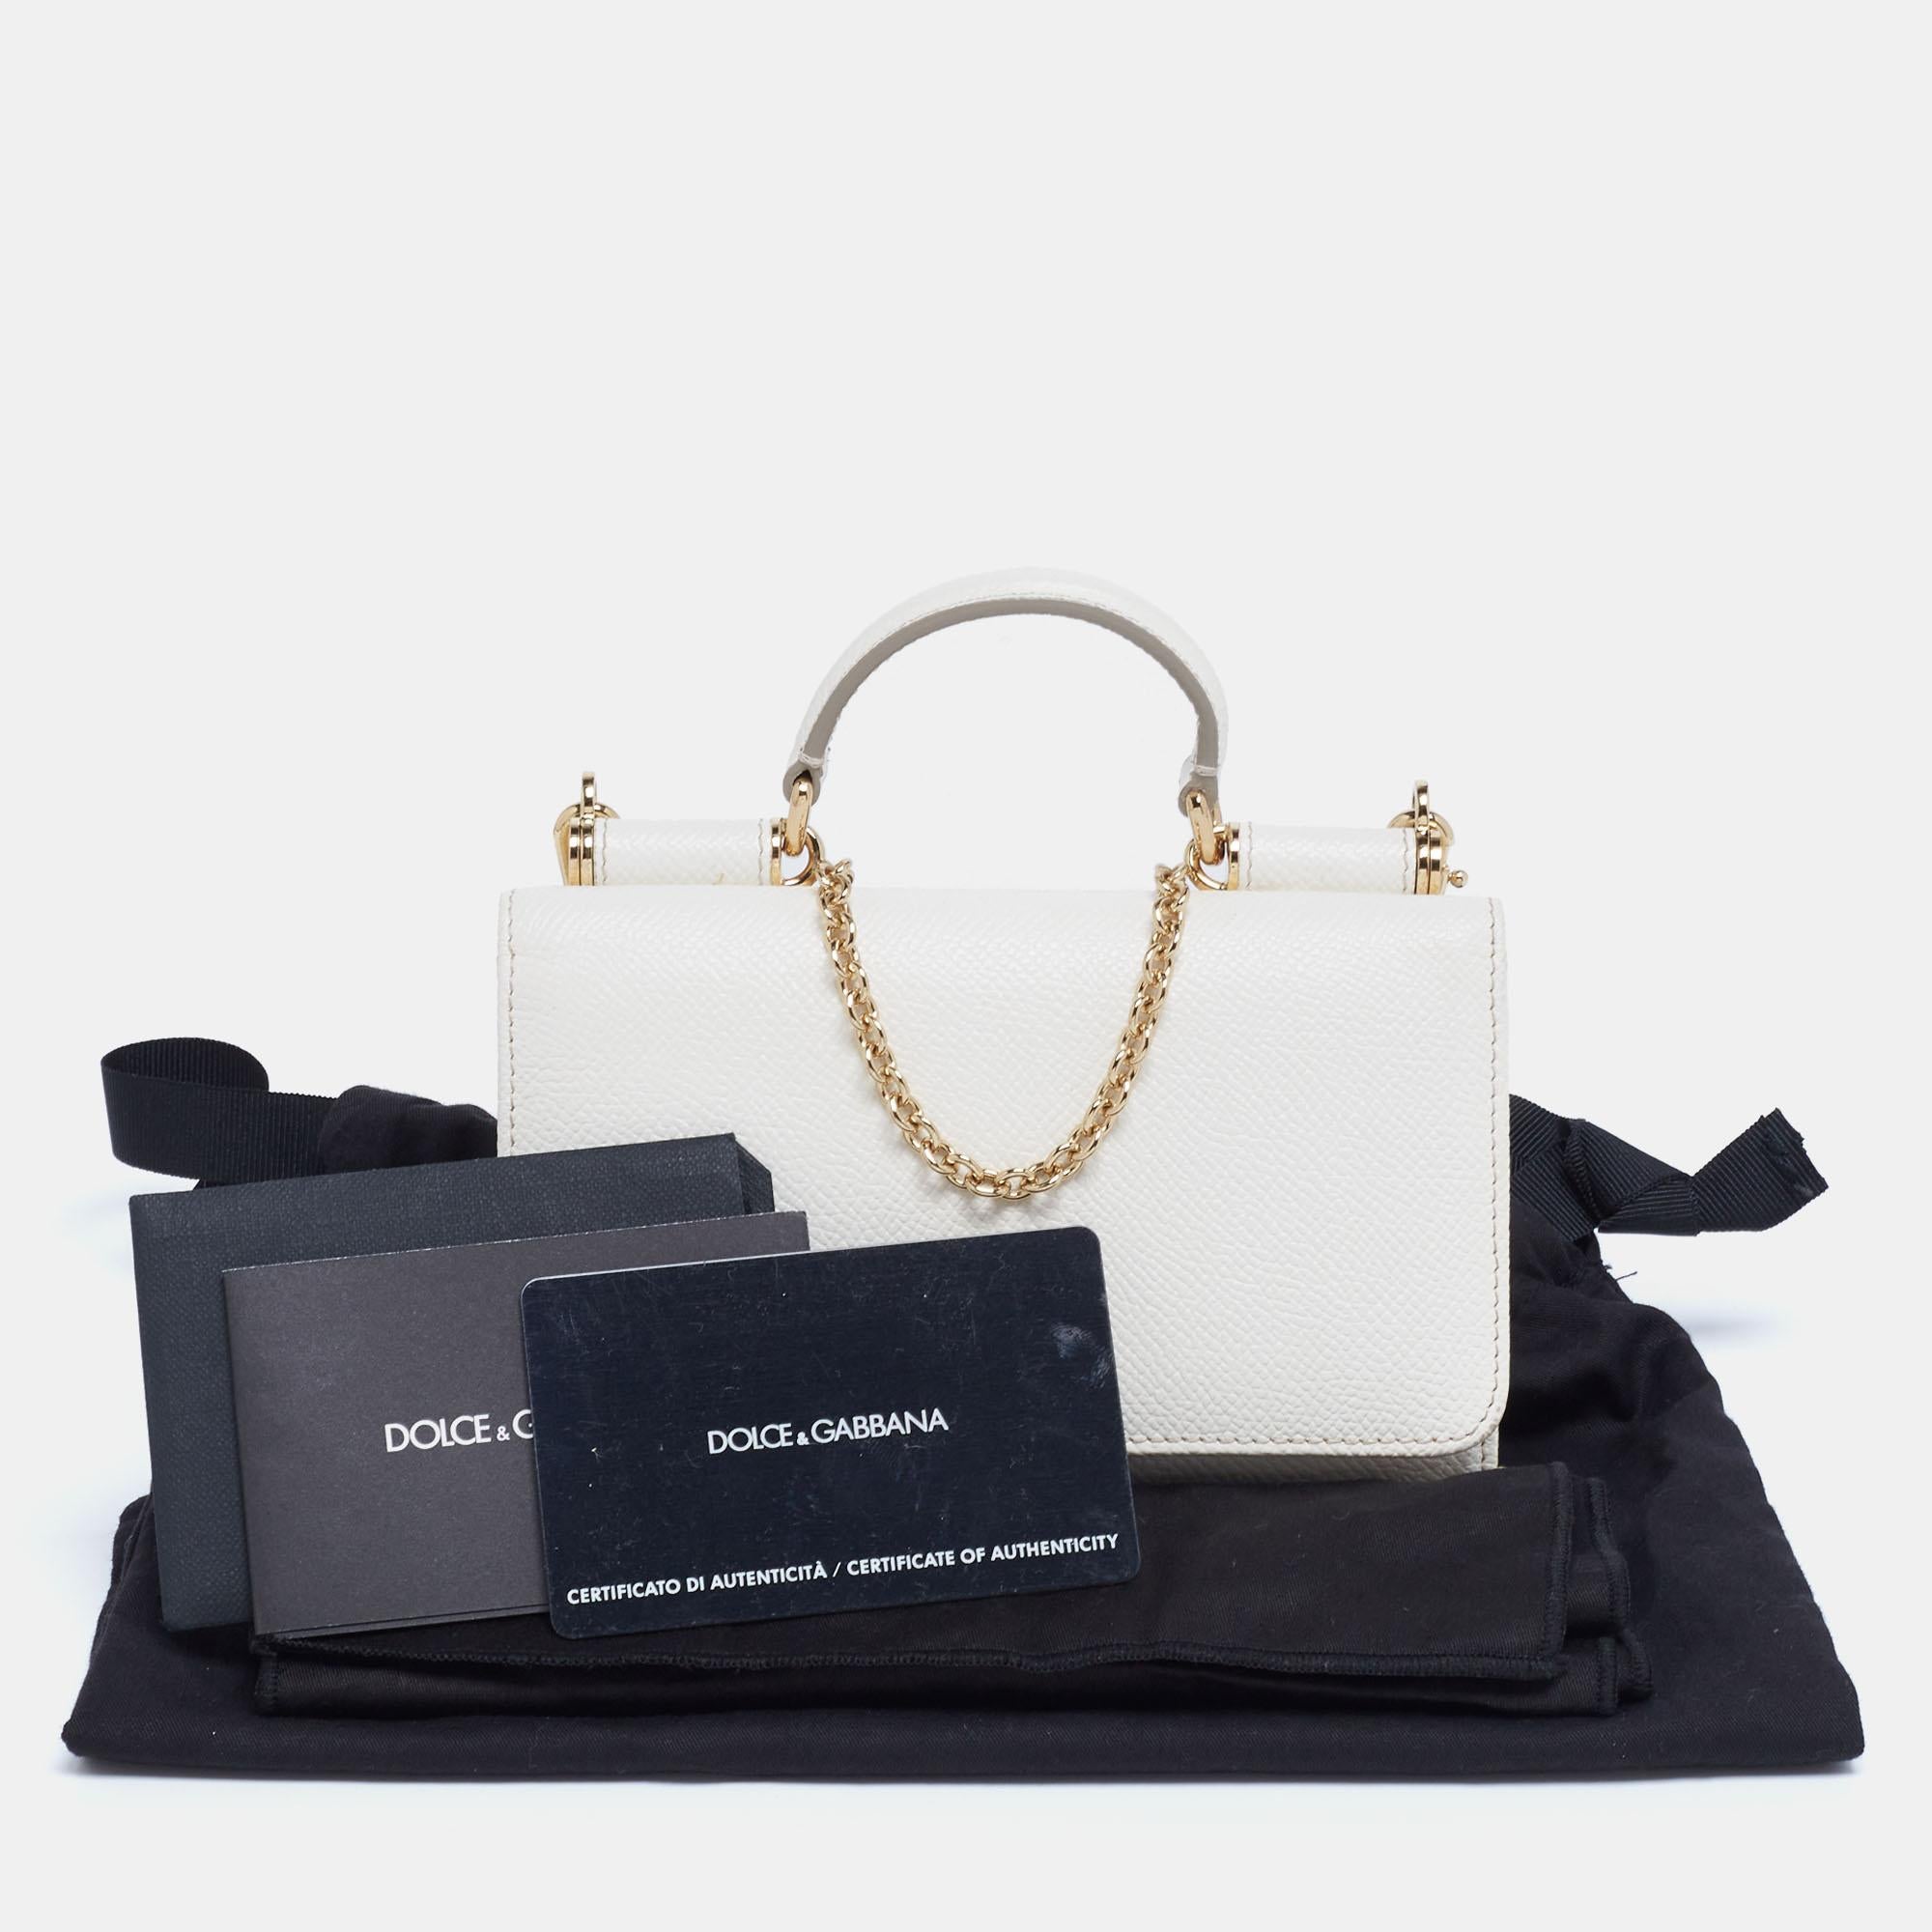 Dolce & Gabbana Off White Leather Miss Sicily Von Smartphone Bag 6